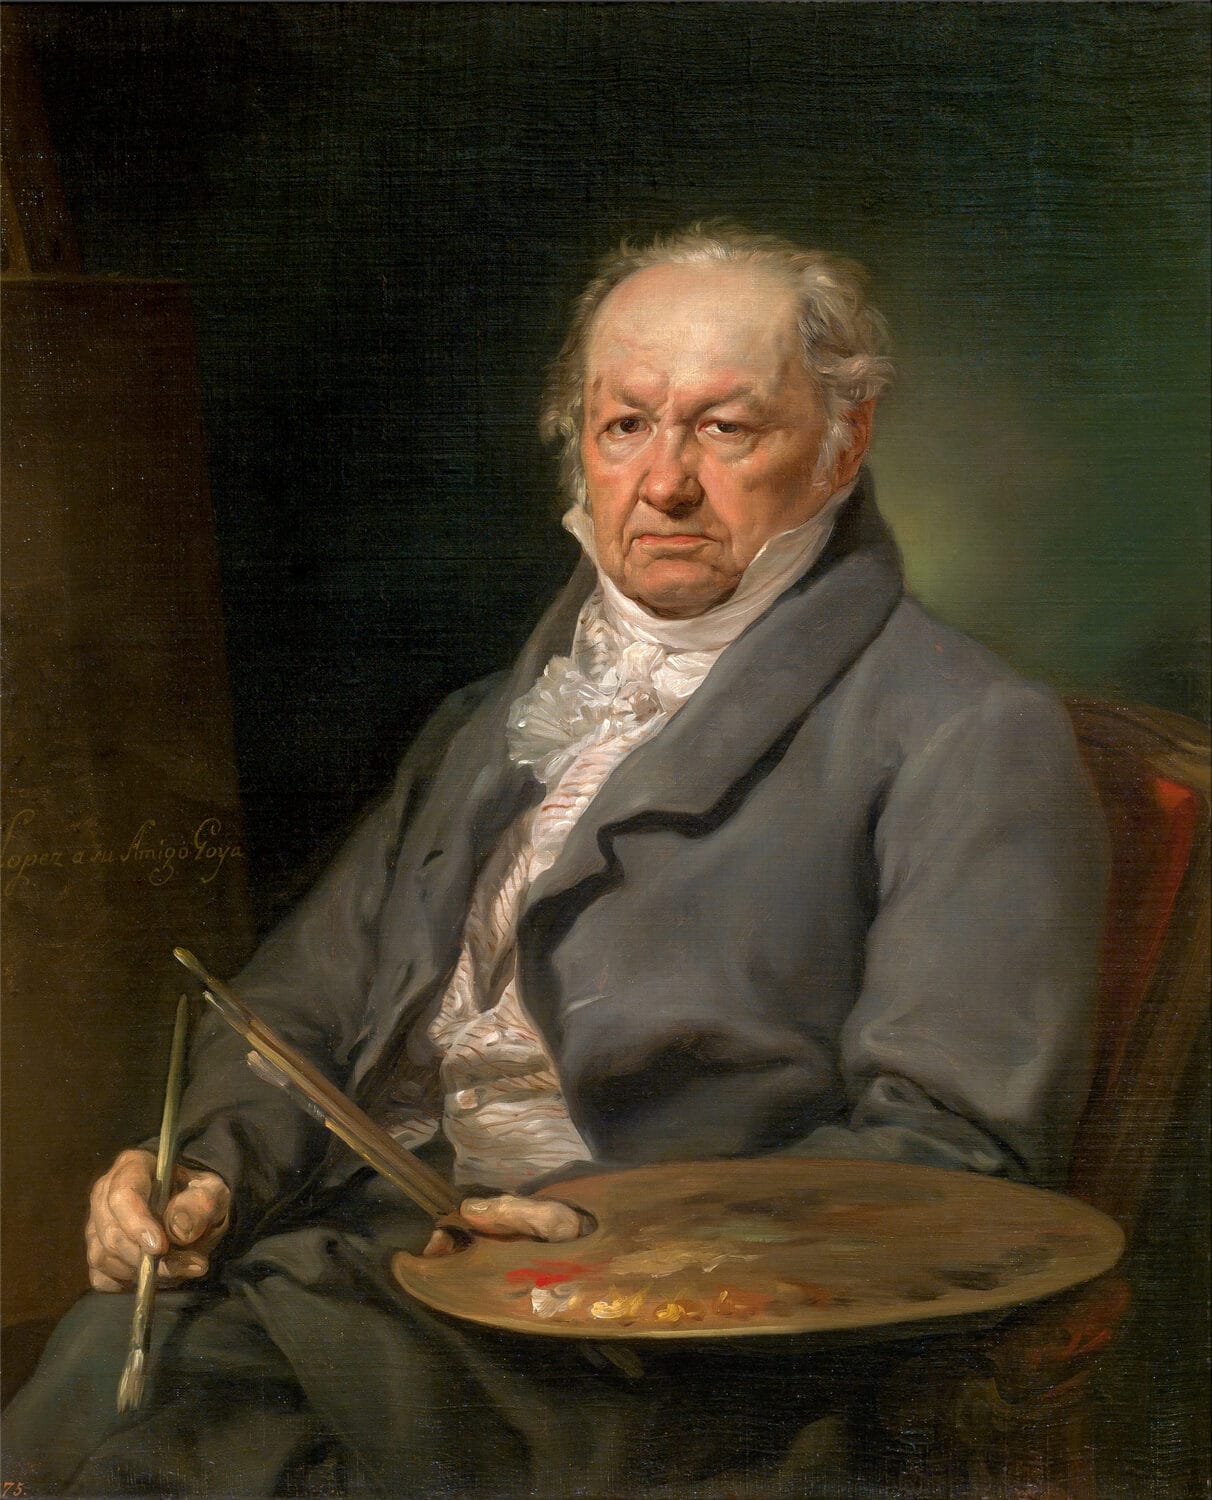 Retrato del pintor Francisco de Goya (1826), por Vicente López, Museo del Prado, Madrid.